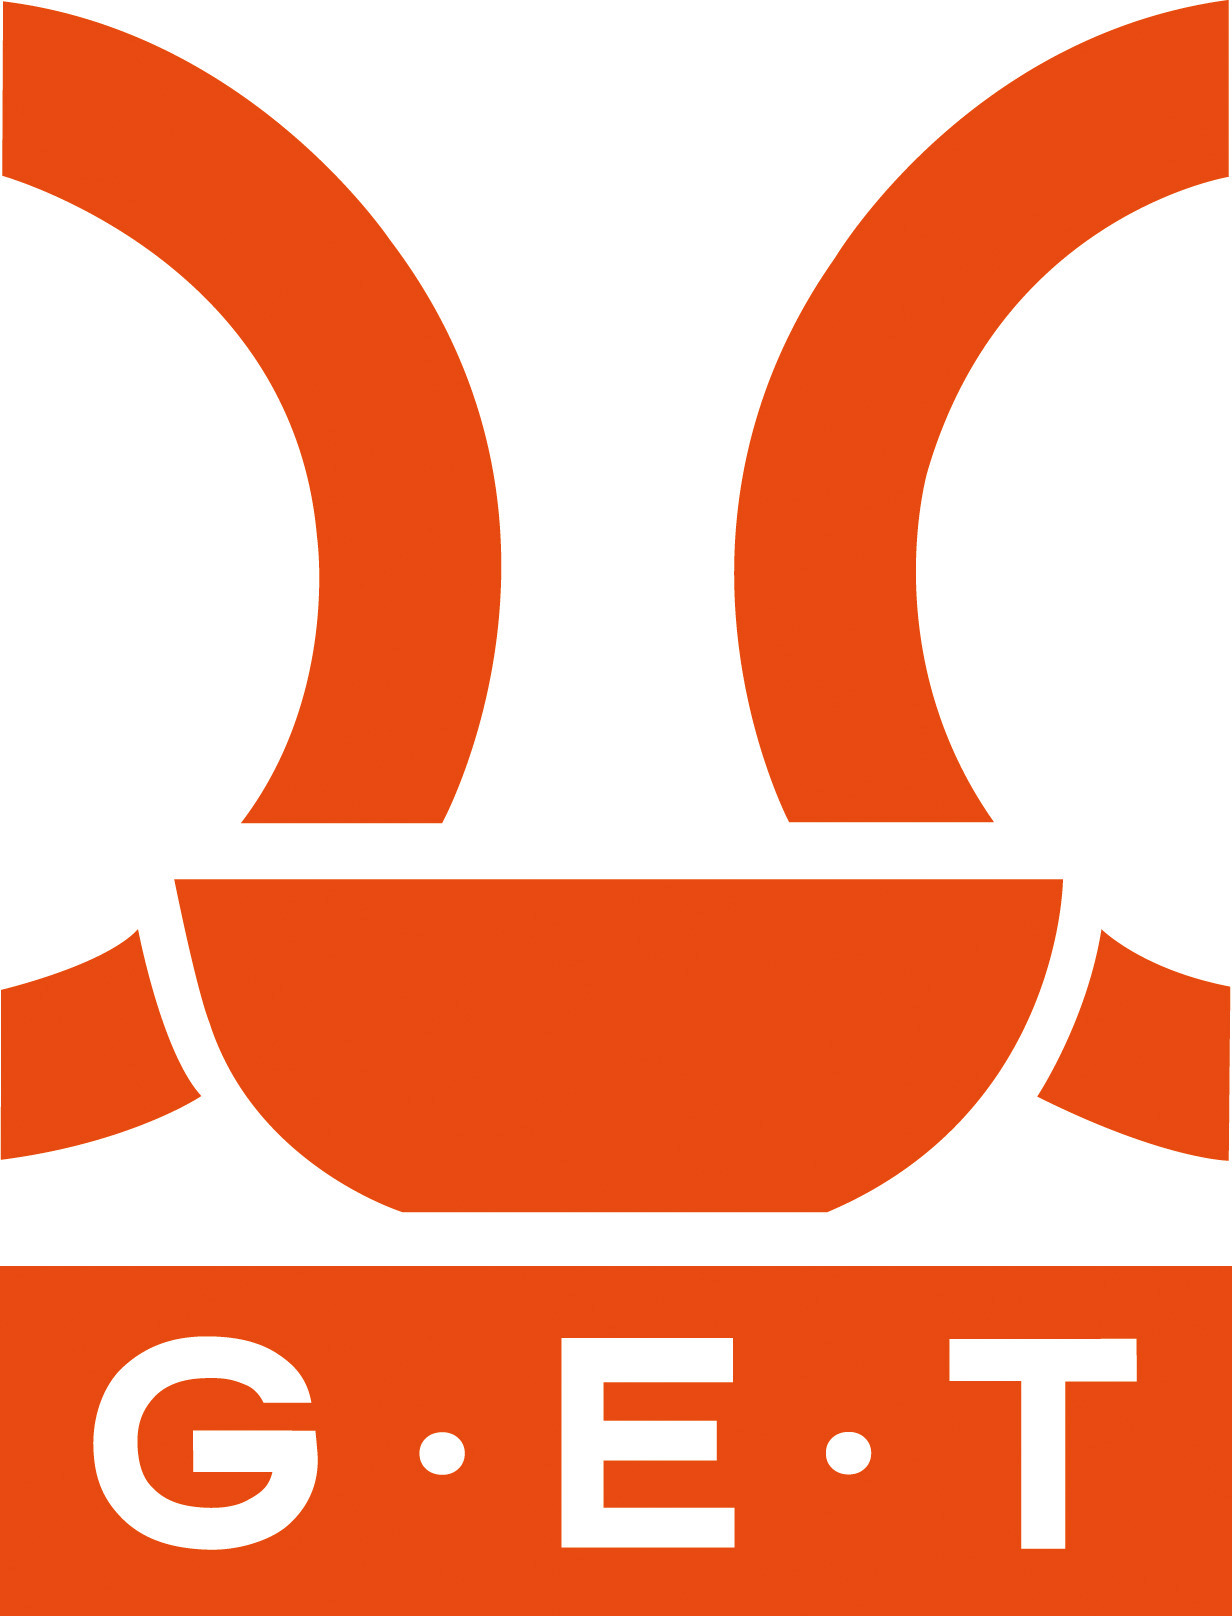 G.E.T